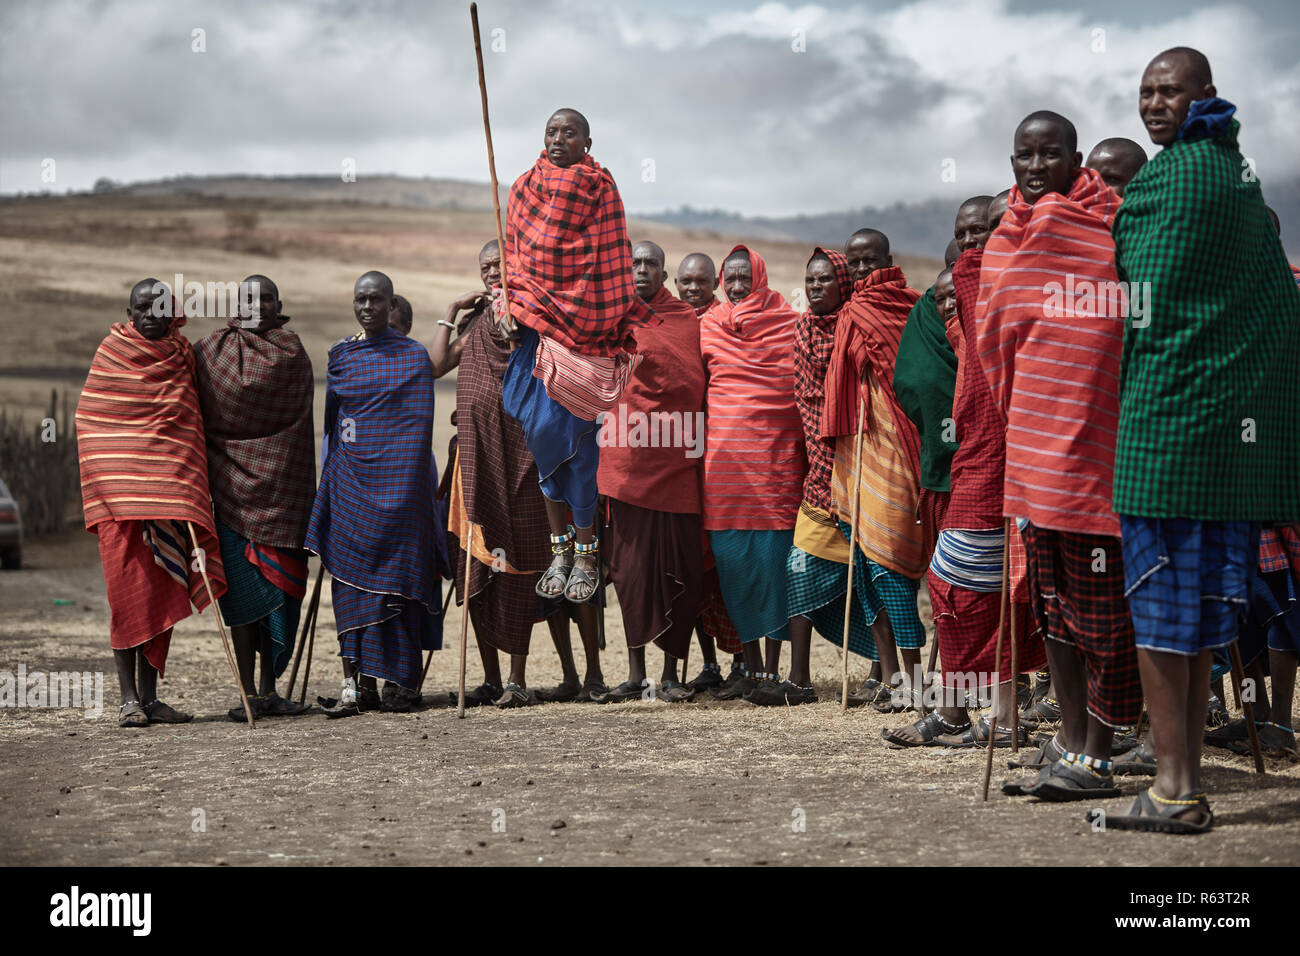 Masai people jumping Stock Photo